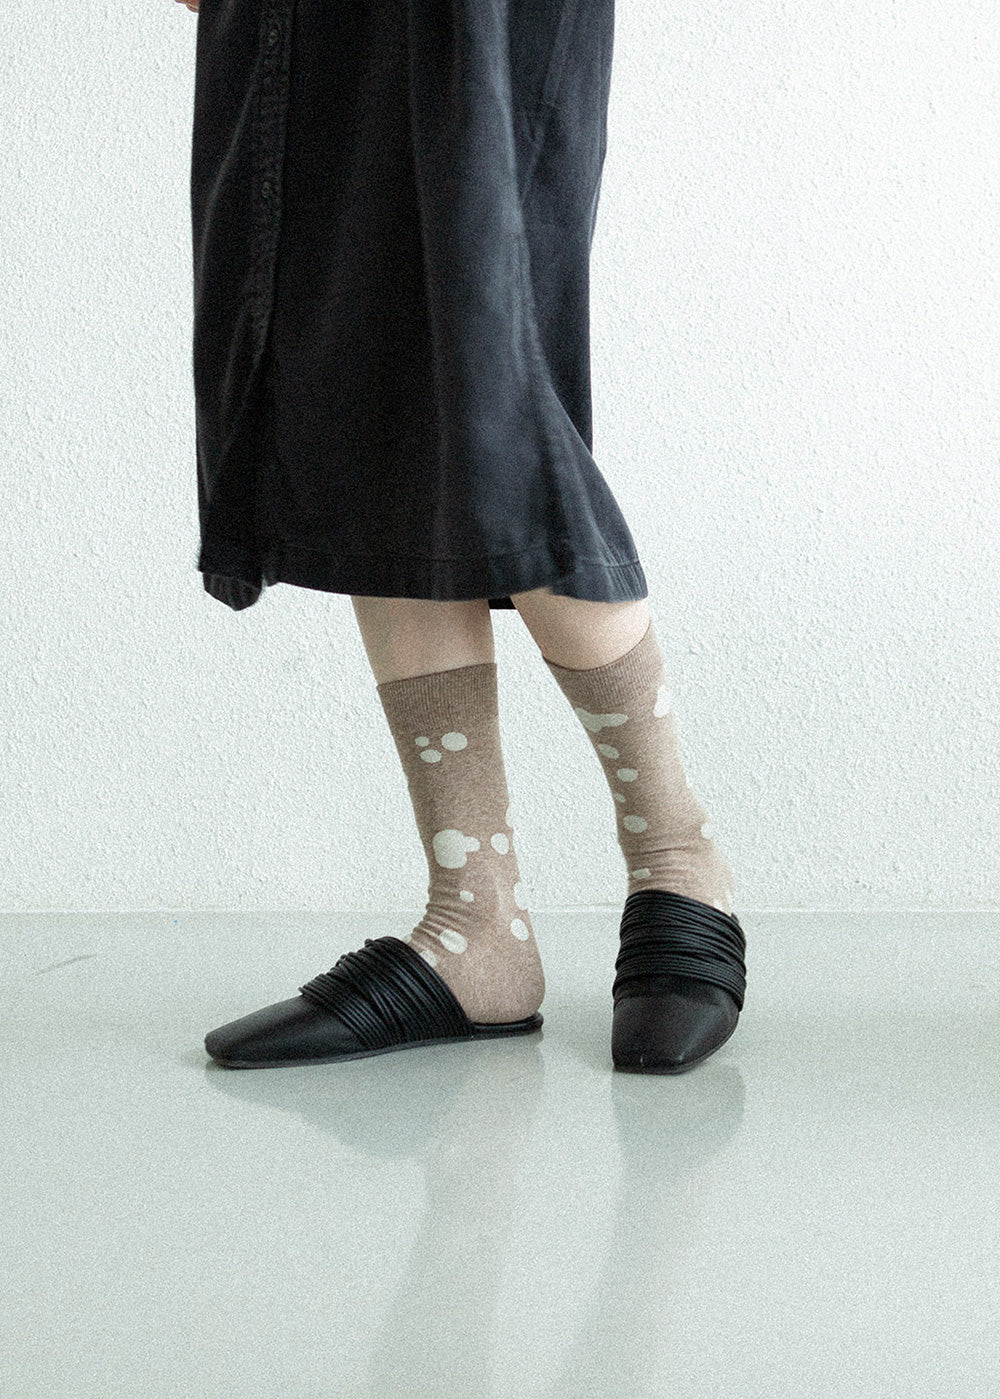 Women&#39;s Dalmatian Pattern Socks - Beige &amp; Ivory